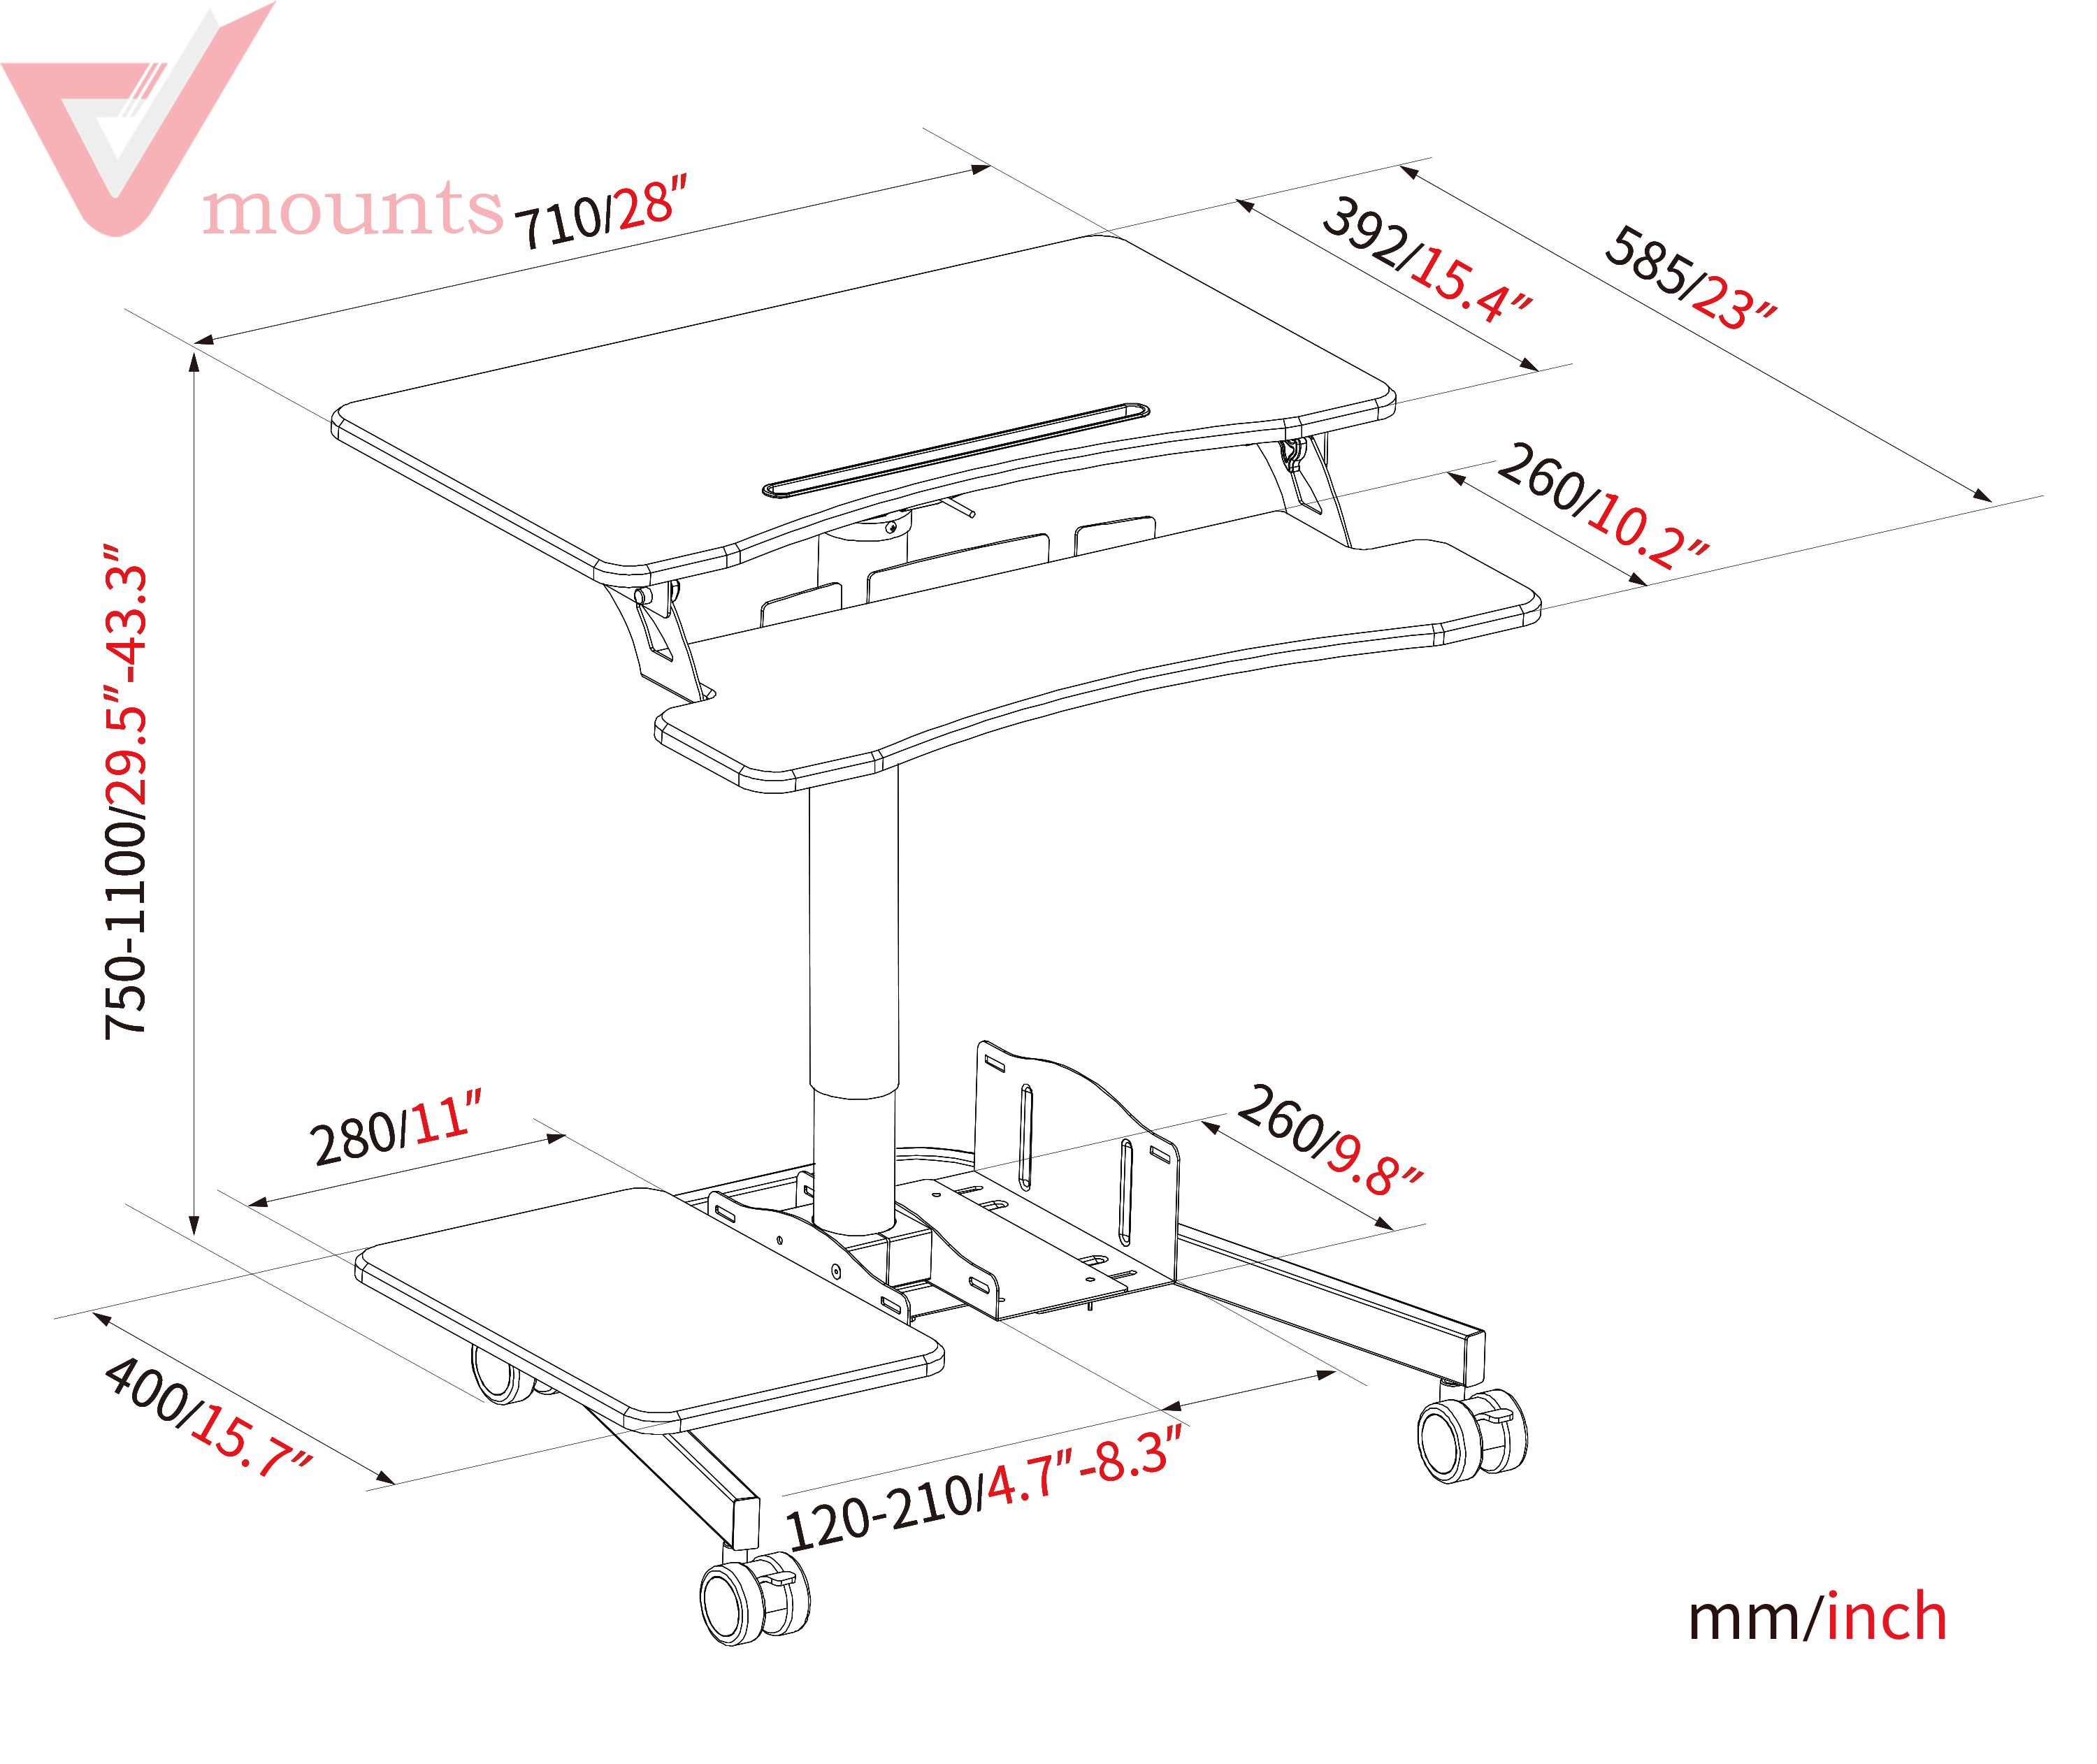 Mobile Manual Height Adjustable Office Desk VM-FDS108